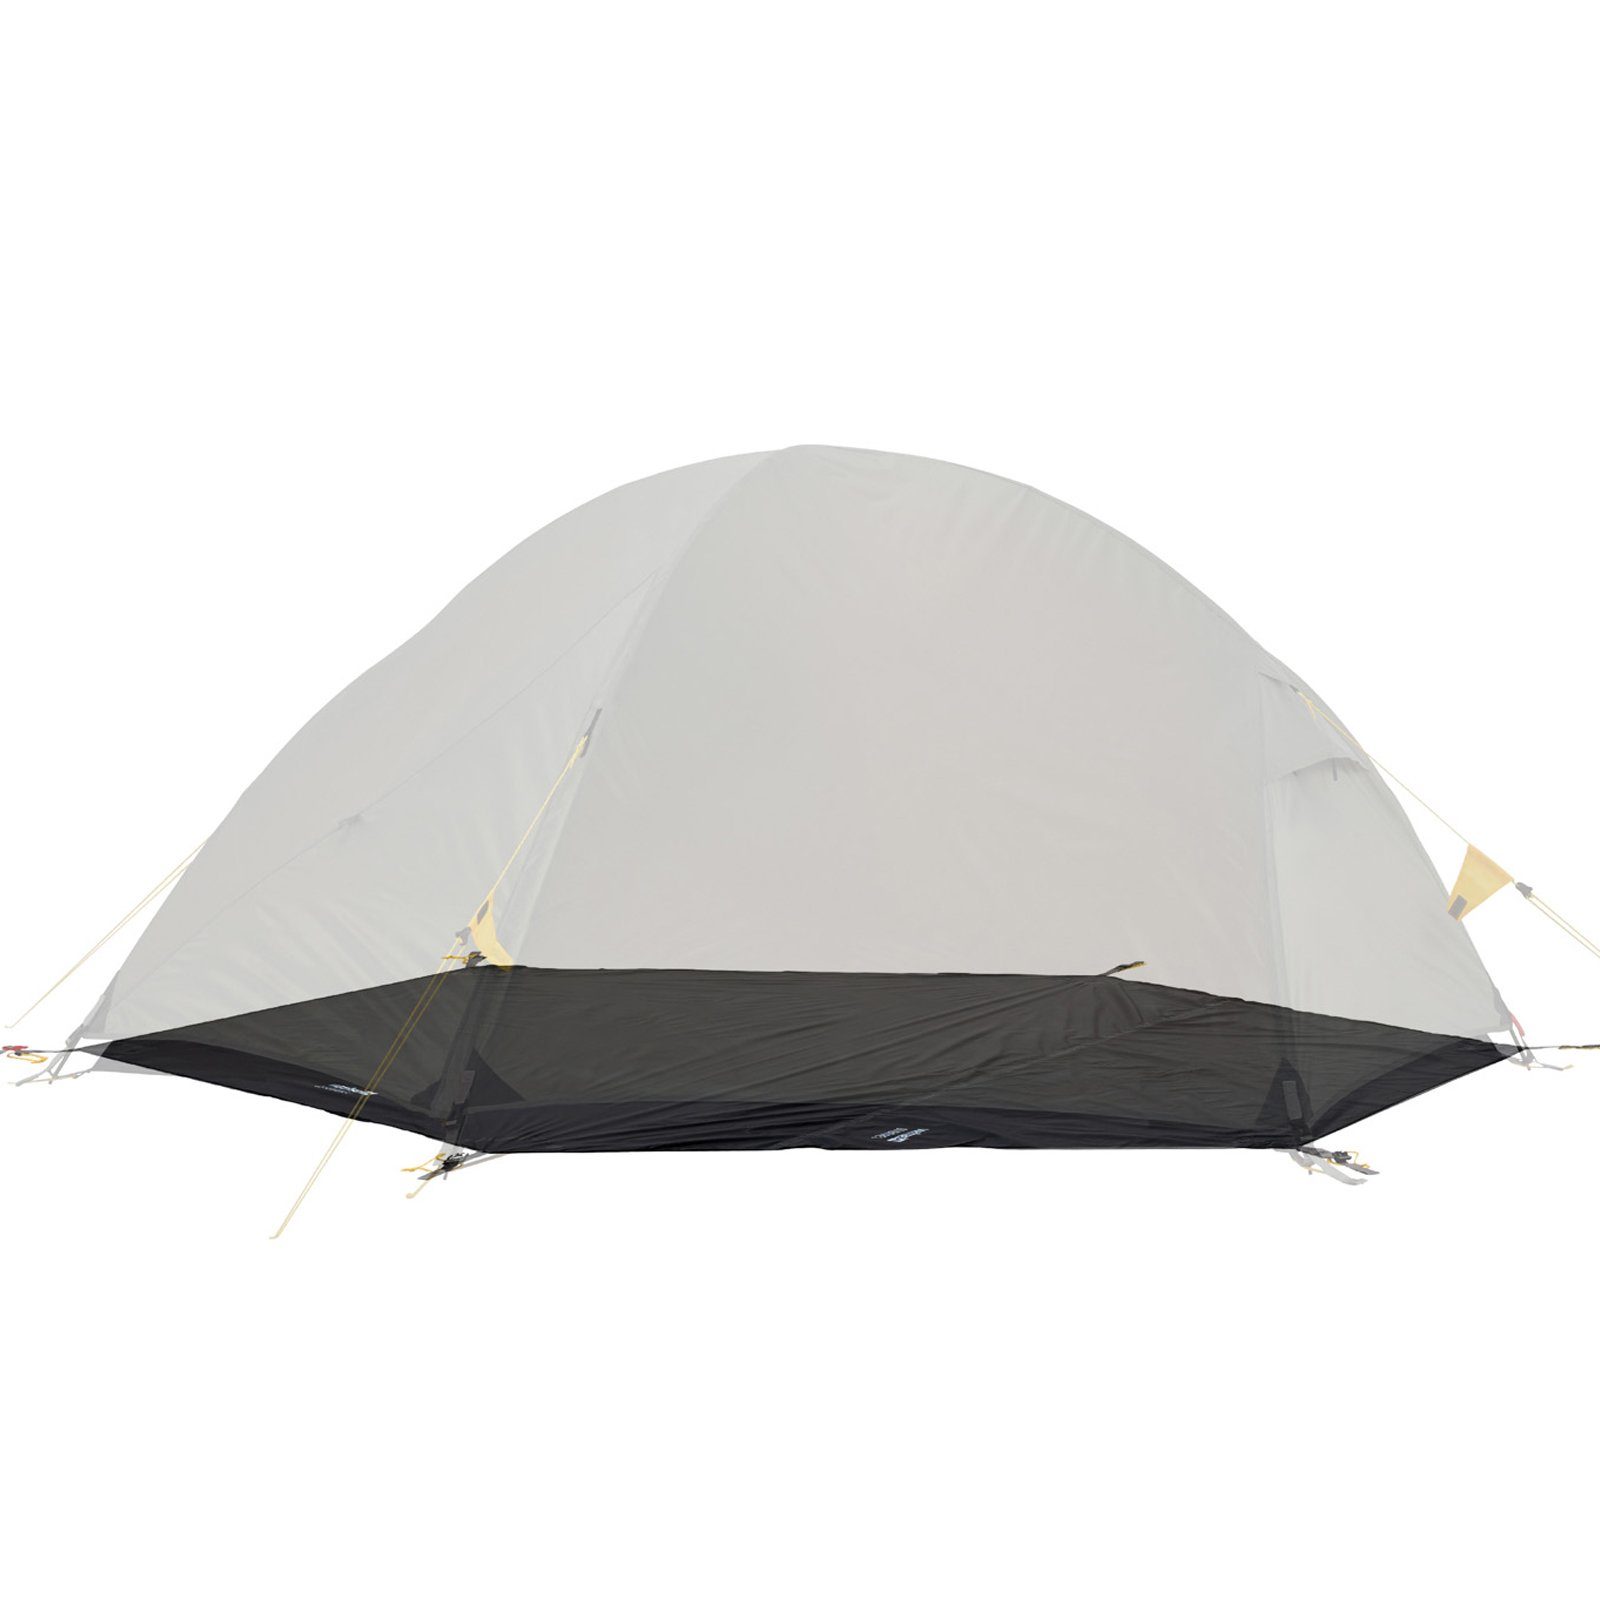 Outdoorteppich Groundsheet Für Venture 2 Zusätzlicher Zeltboden, Wechsel, Camping Plane Passgenau